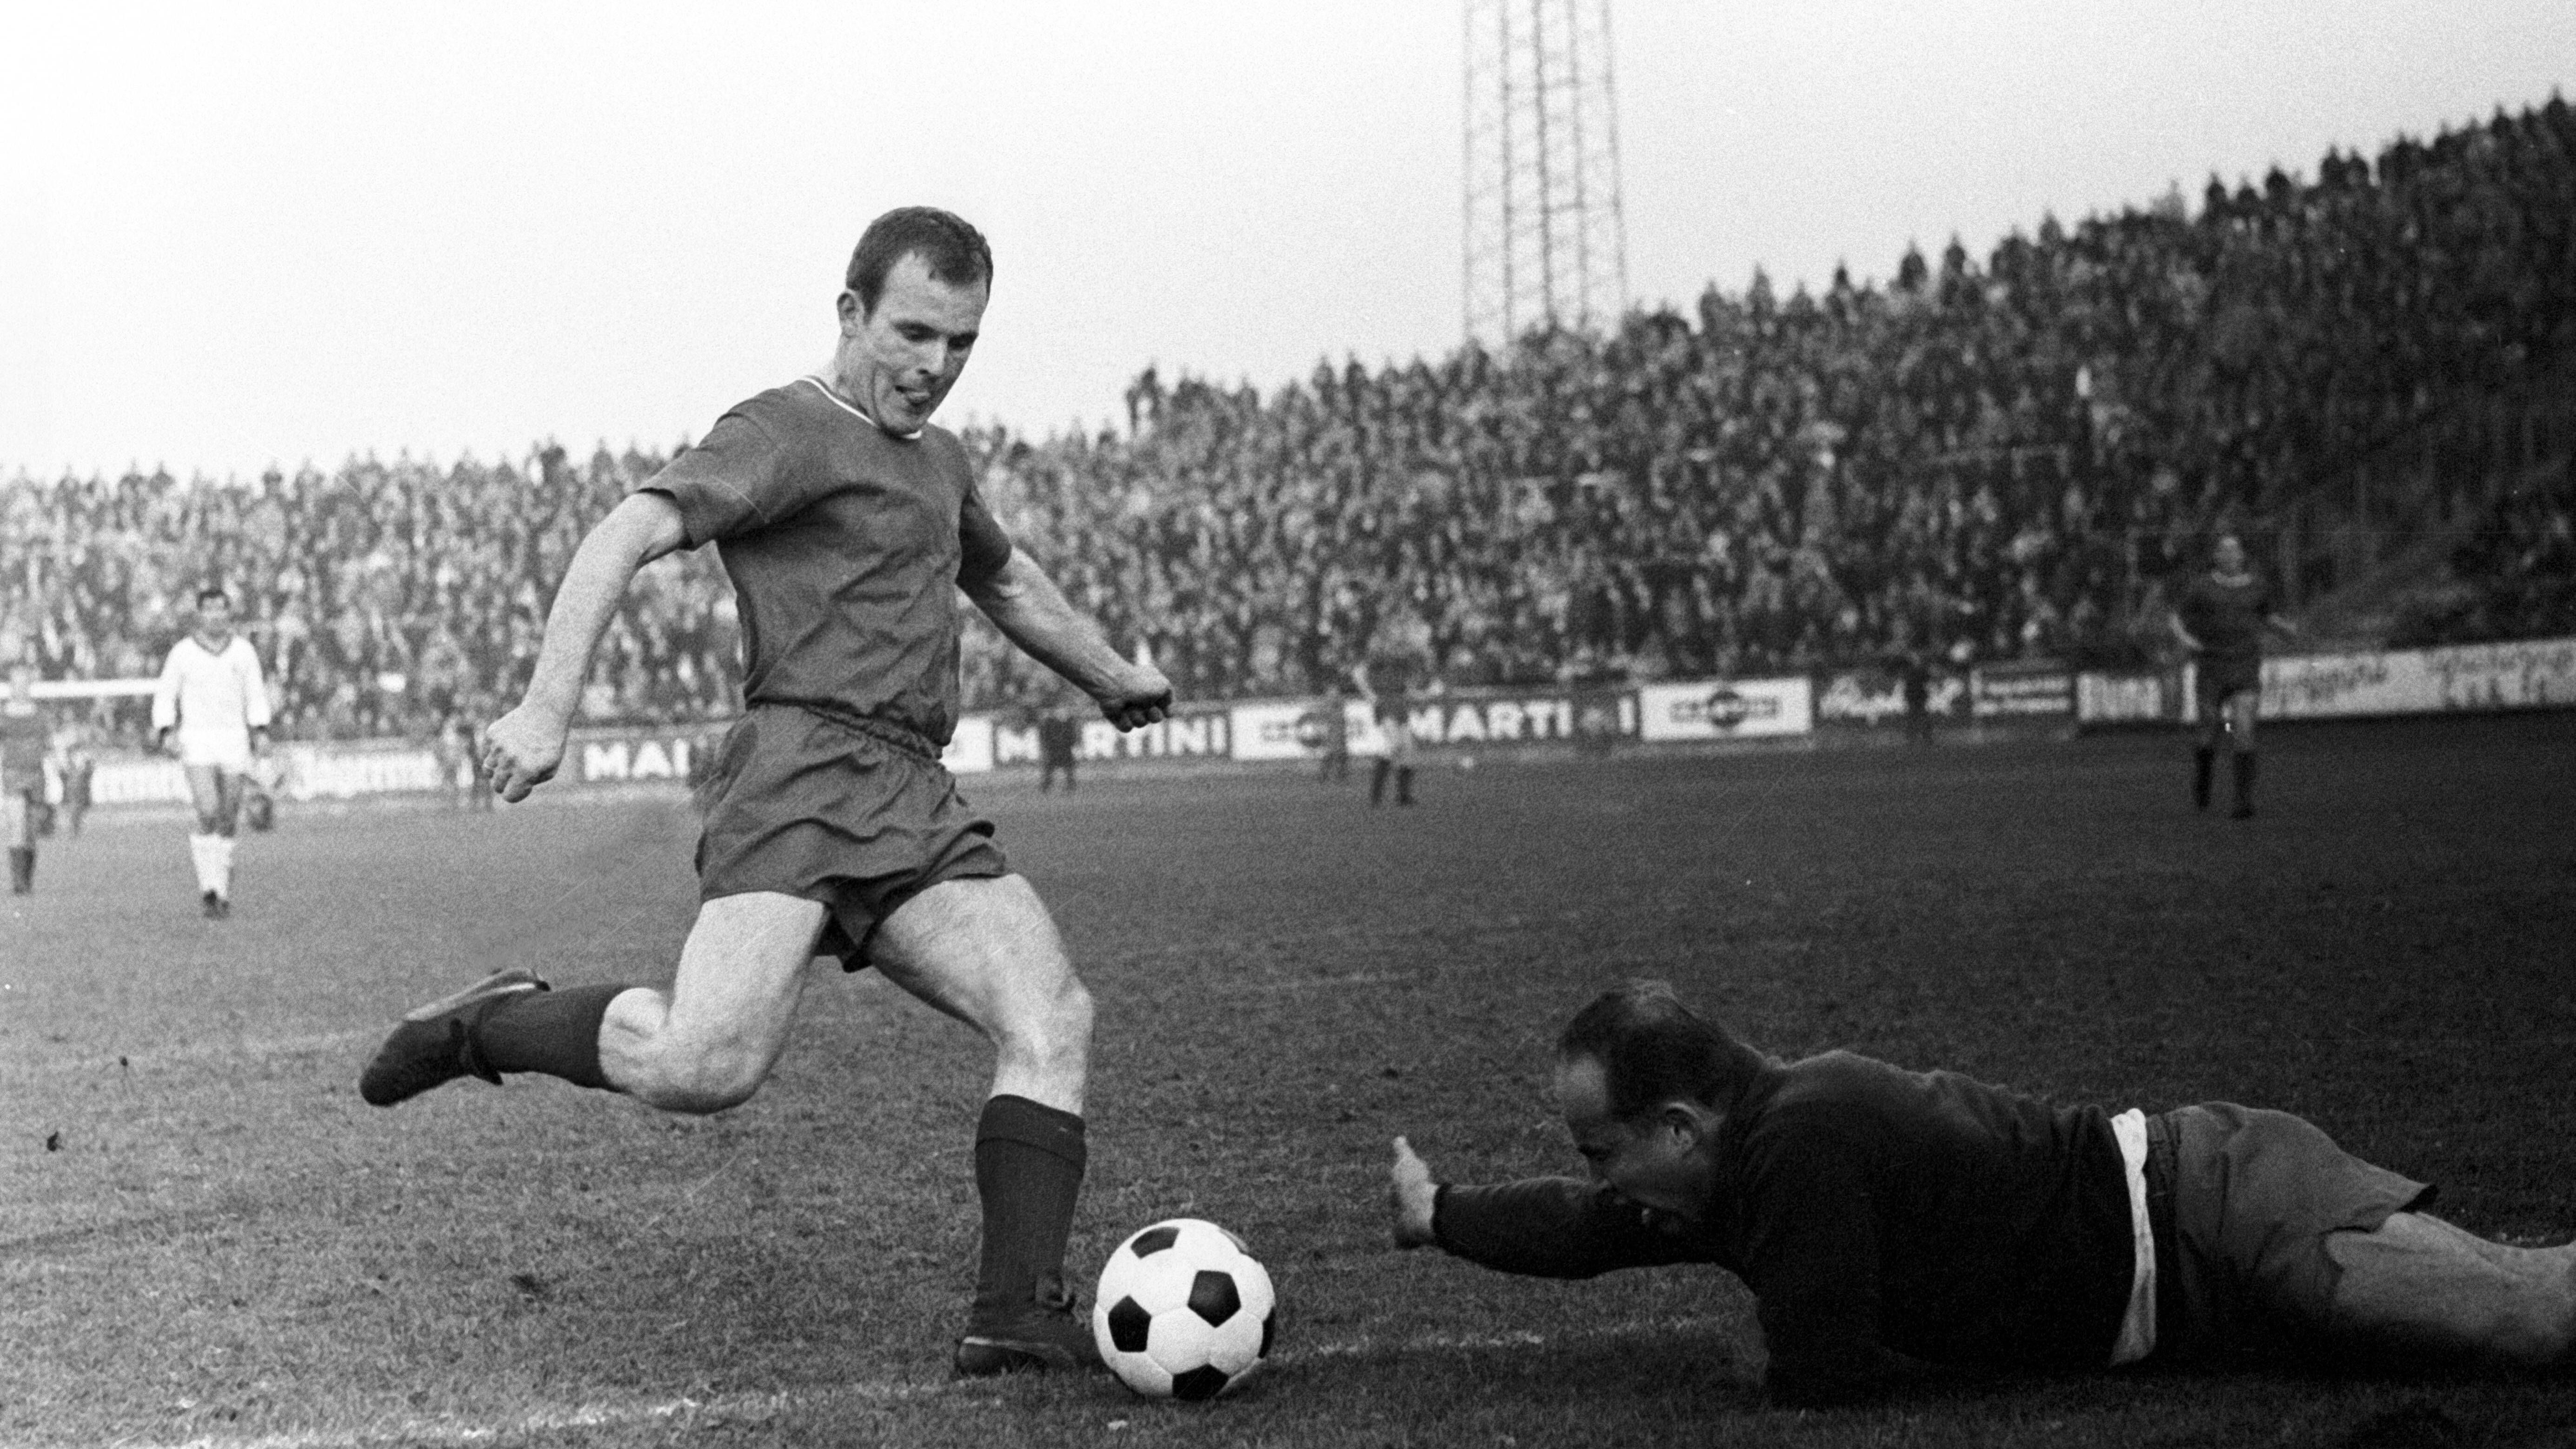 <strong>Sechs Tore: Manfred Rummel</strong><br><strong>Saison:</strong> 1965/66<br><strong>Verein:</strong> 1. FC Kaiserslautern